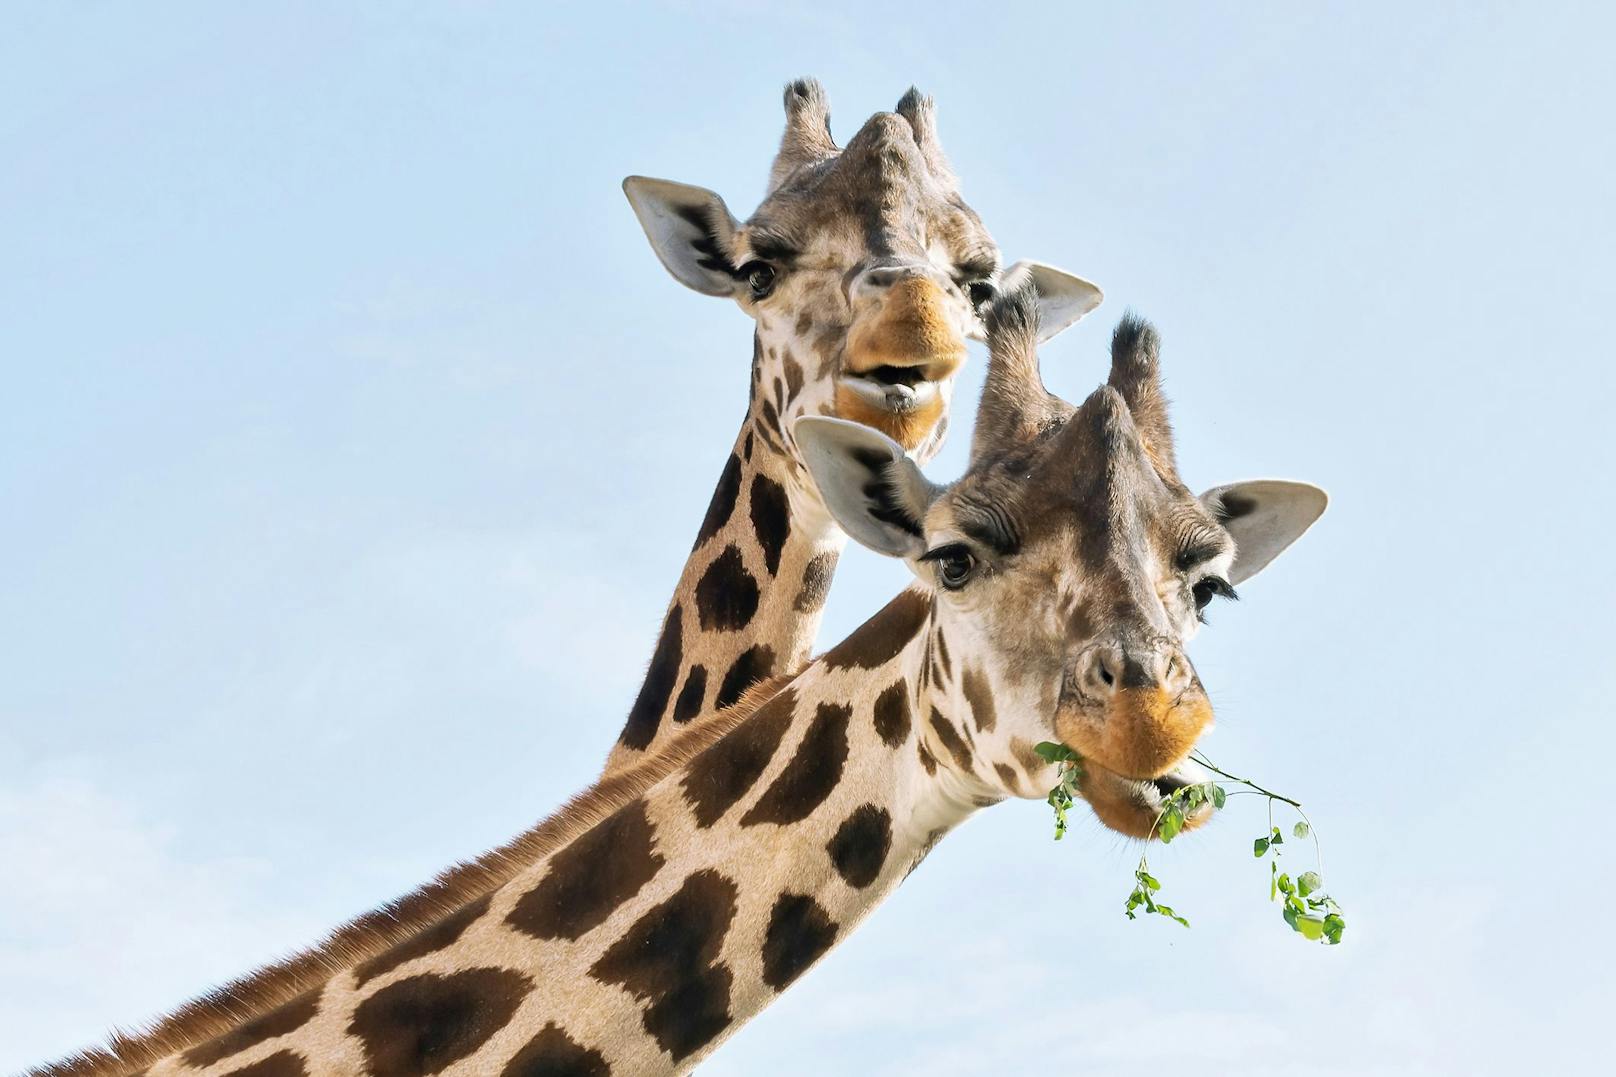 Die zwei Mädels blieben bei ihrem "Buben" weil er altersmäßig nicht mehr in den neu angelegten Giraffenpark übersiedelt werden konnte.